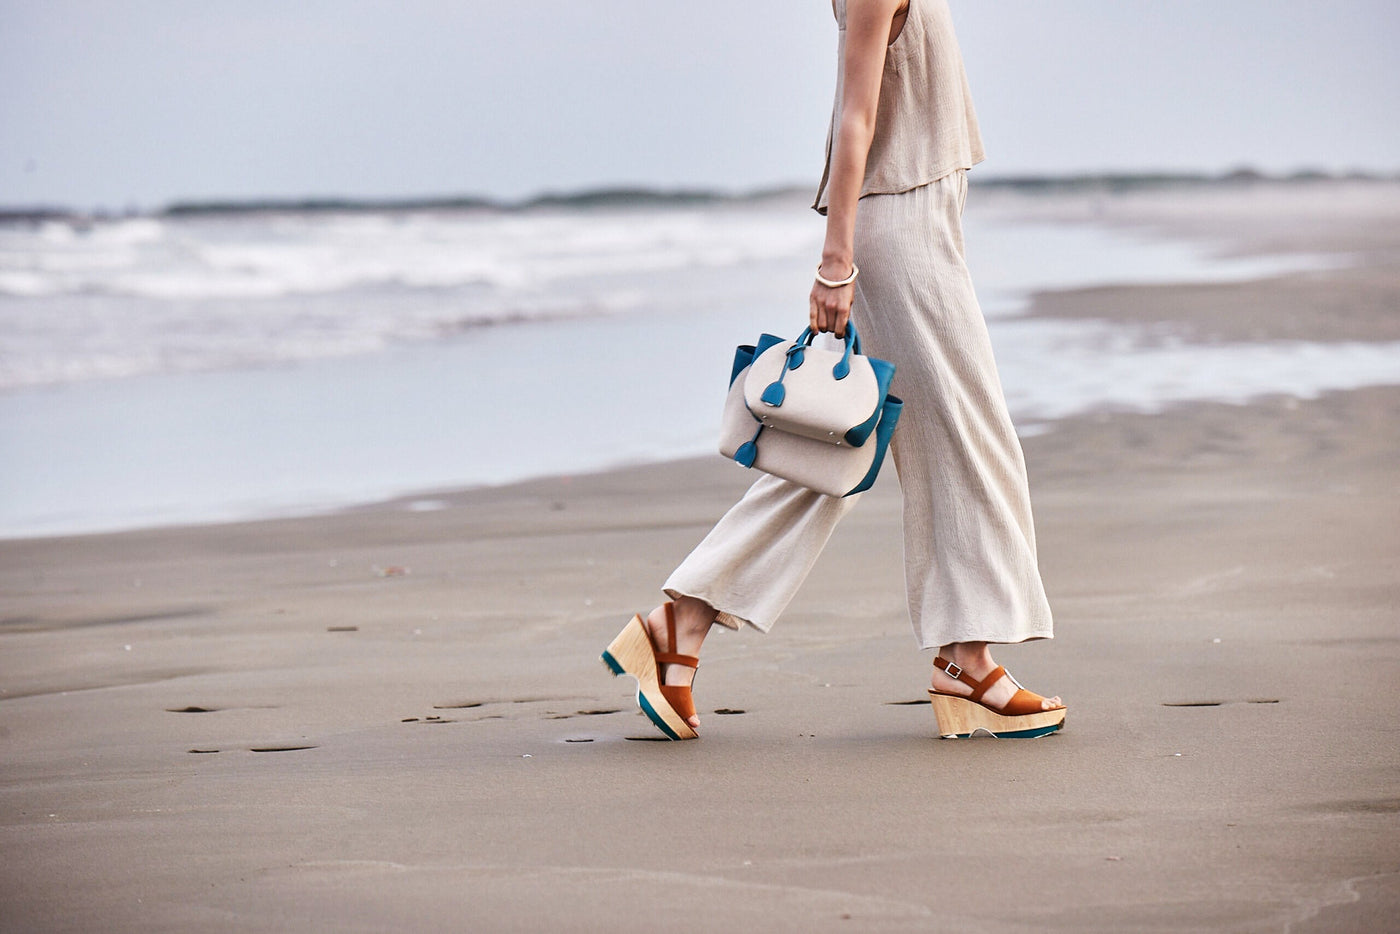 Woman with an elegant beach bag walks on a sunny beach.